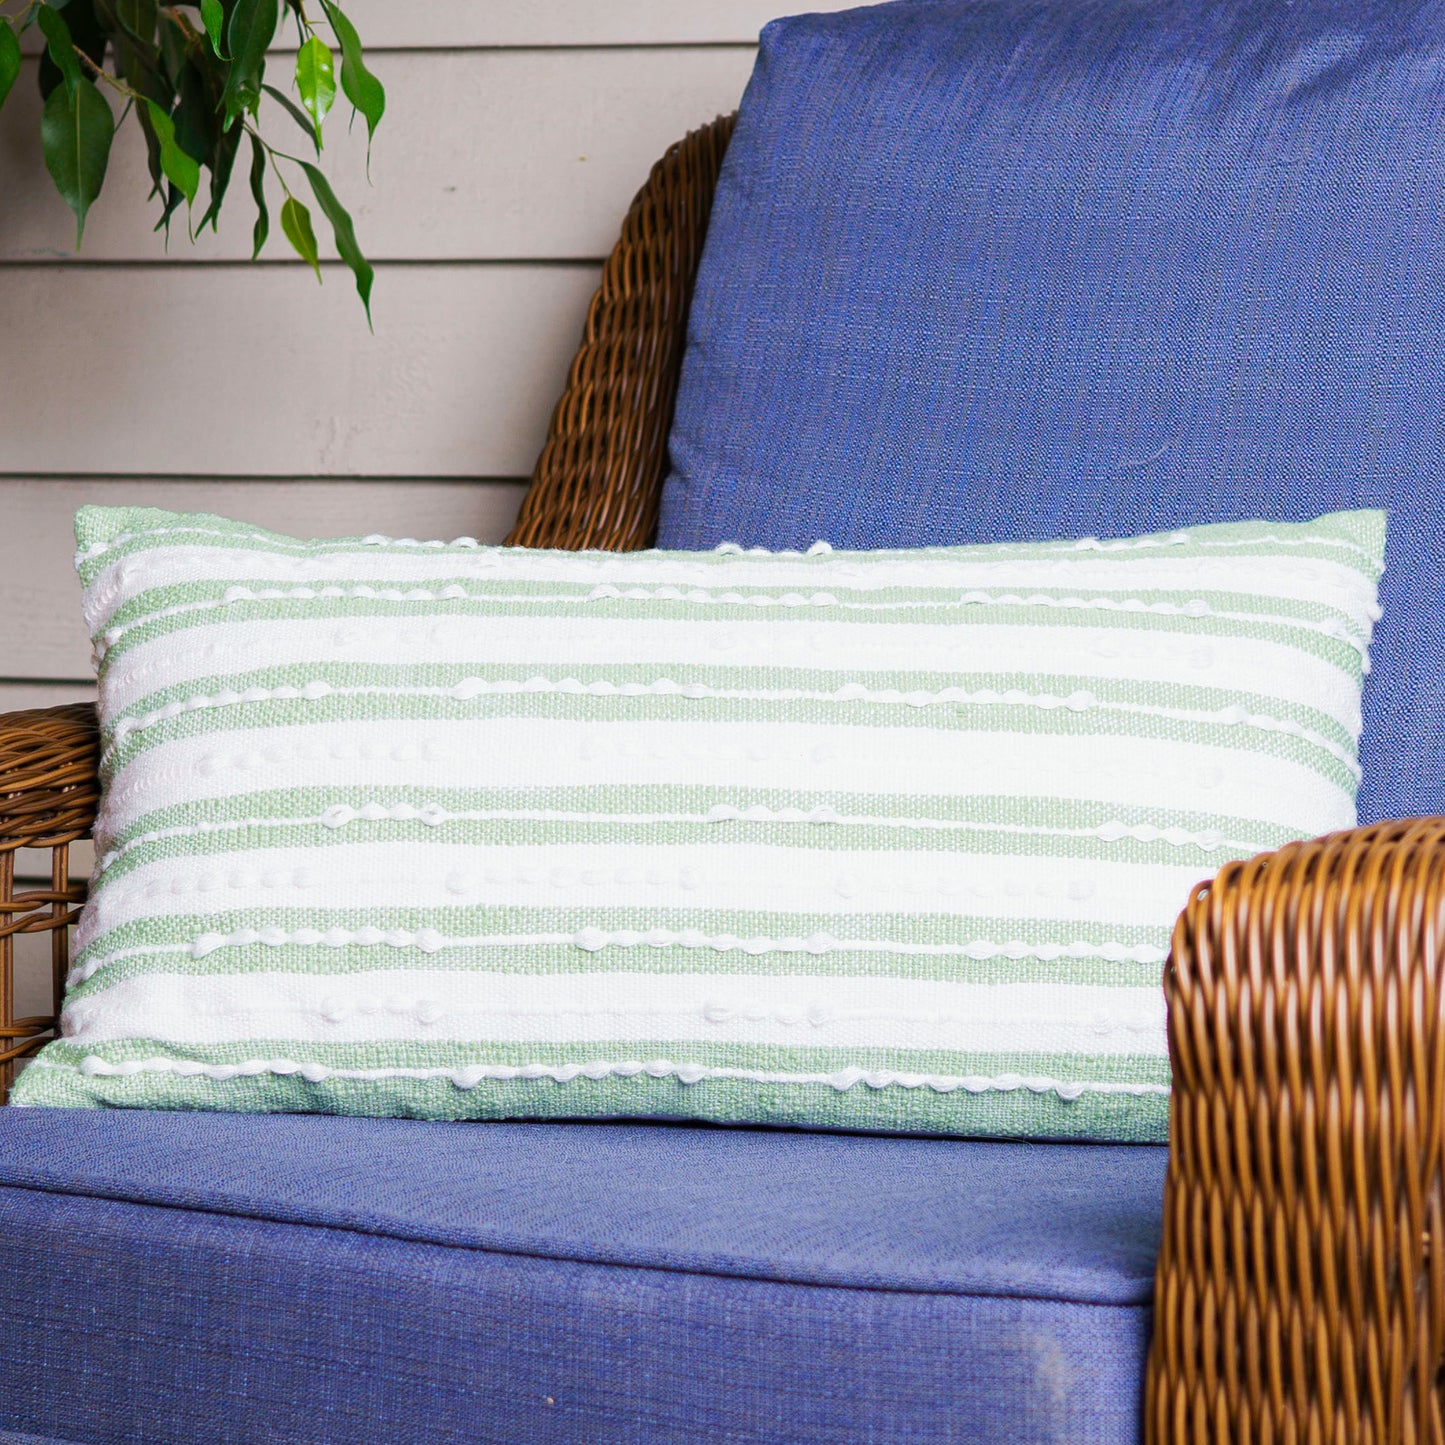 Romy 12X22" Handwoven Striped Indoor/Outdoor Throw Pillow